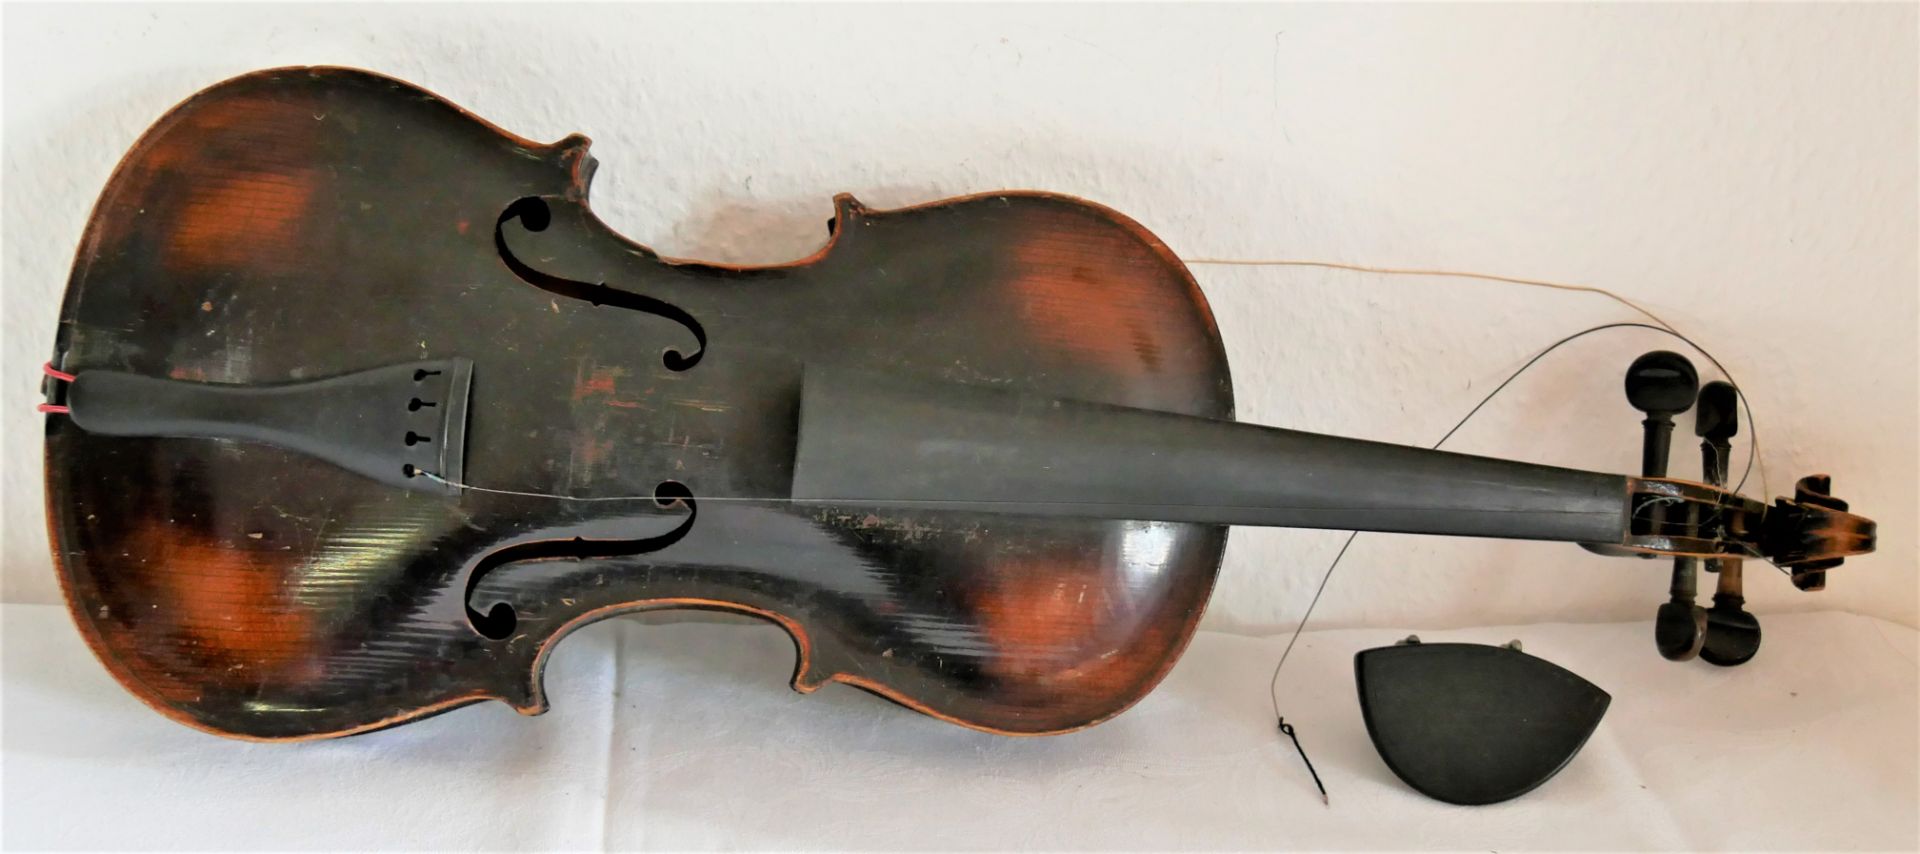 Alte Stainer Geige mit Brandstempel, starke Gebrauchsspuren zum Herrichten, mit Innenzettel, wohl